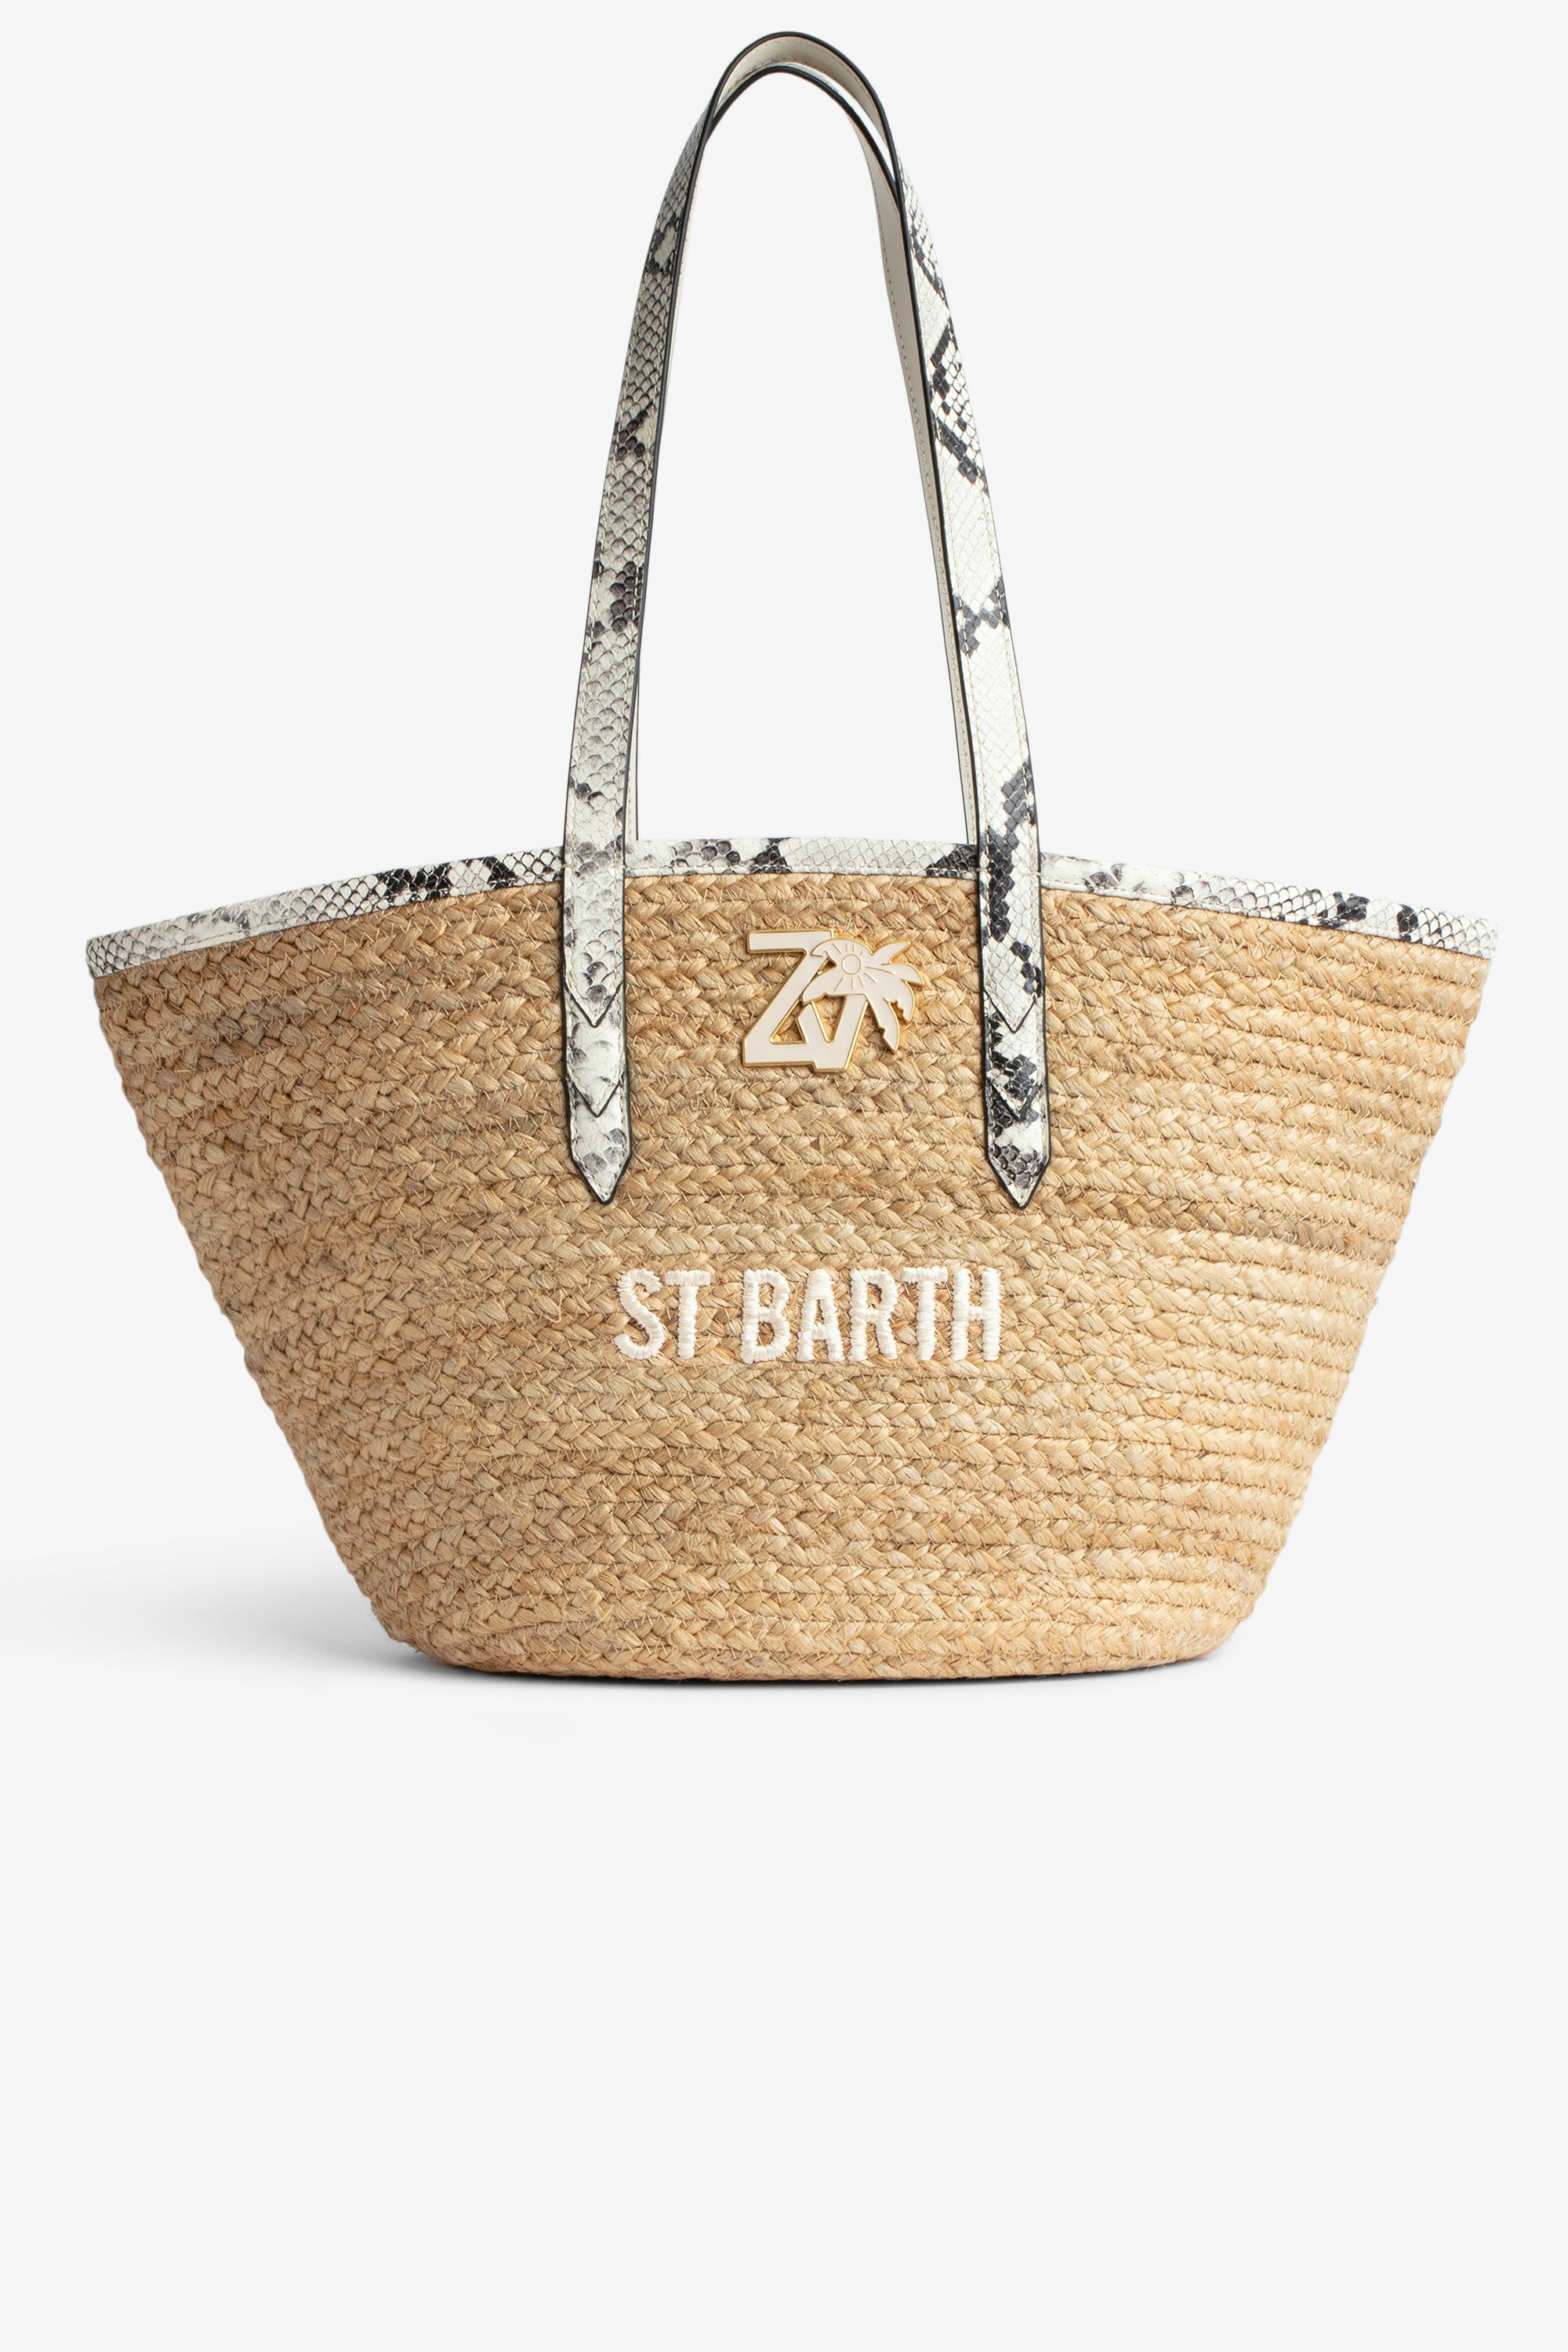 Bolso Le Beach Bag Bolso de paja con asas de cuero color crudo efecto pitón, bordado «St Barth» y con colgante ZV Mujer